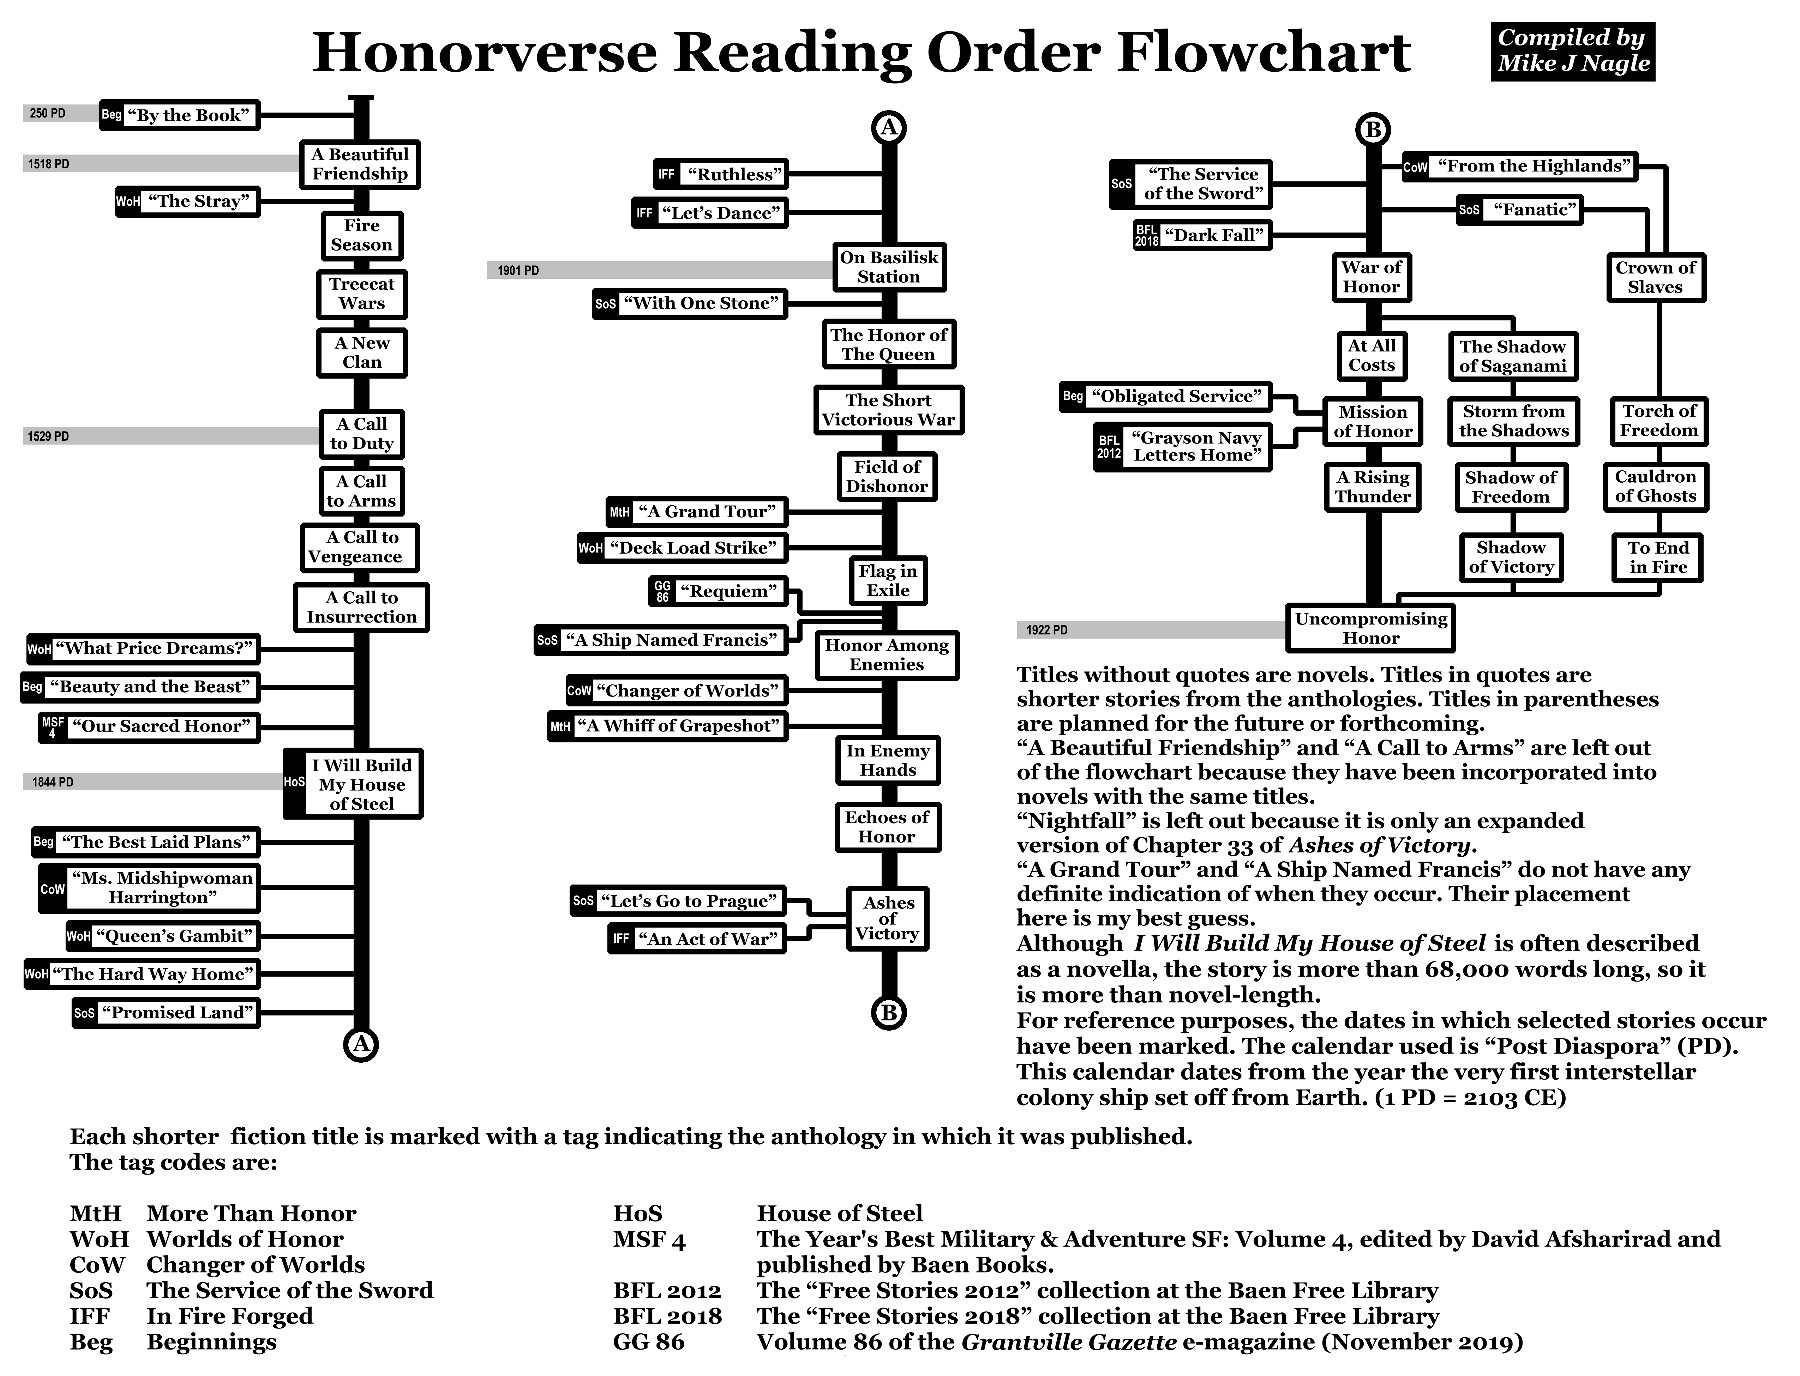 Honorverse_Flowchart.jpg